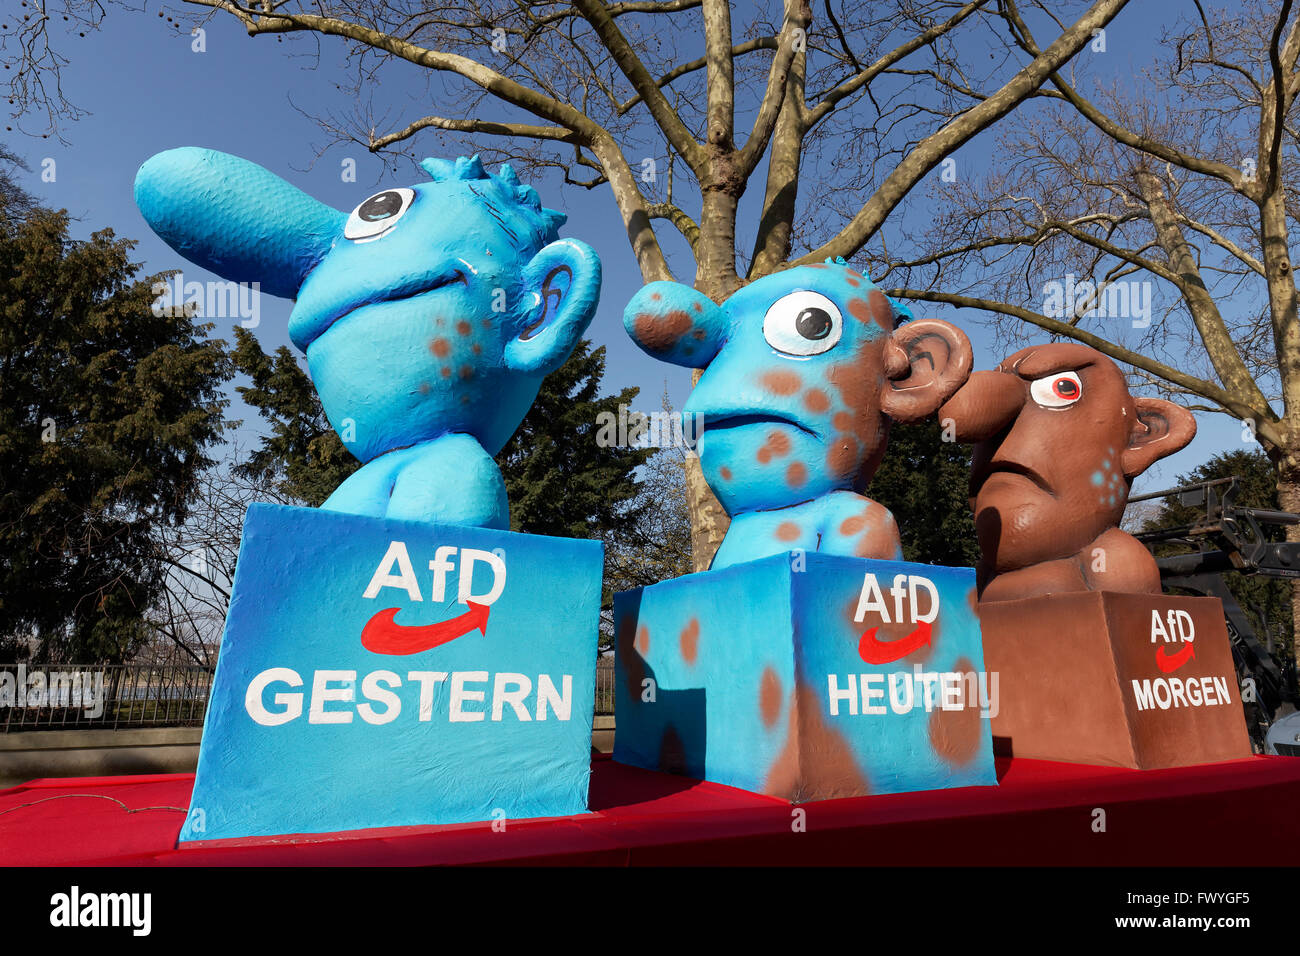 Figuren, welche die AfD gestern, heute, Morgen, politische Karikatur von Jacques Tilly, Schwimmer, Rose Montag parade Stockfoto